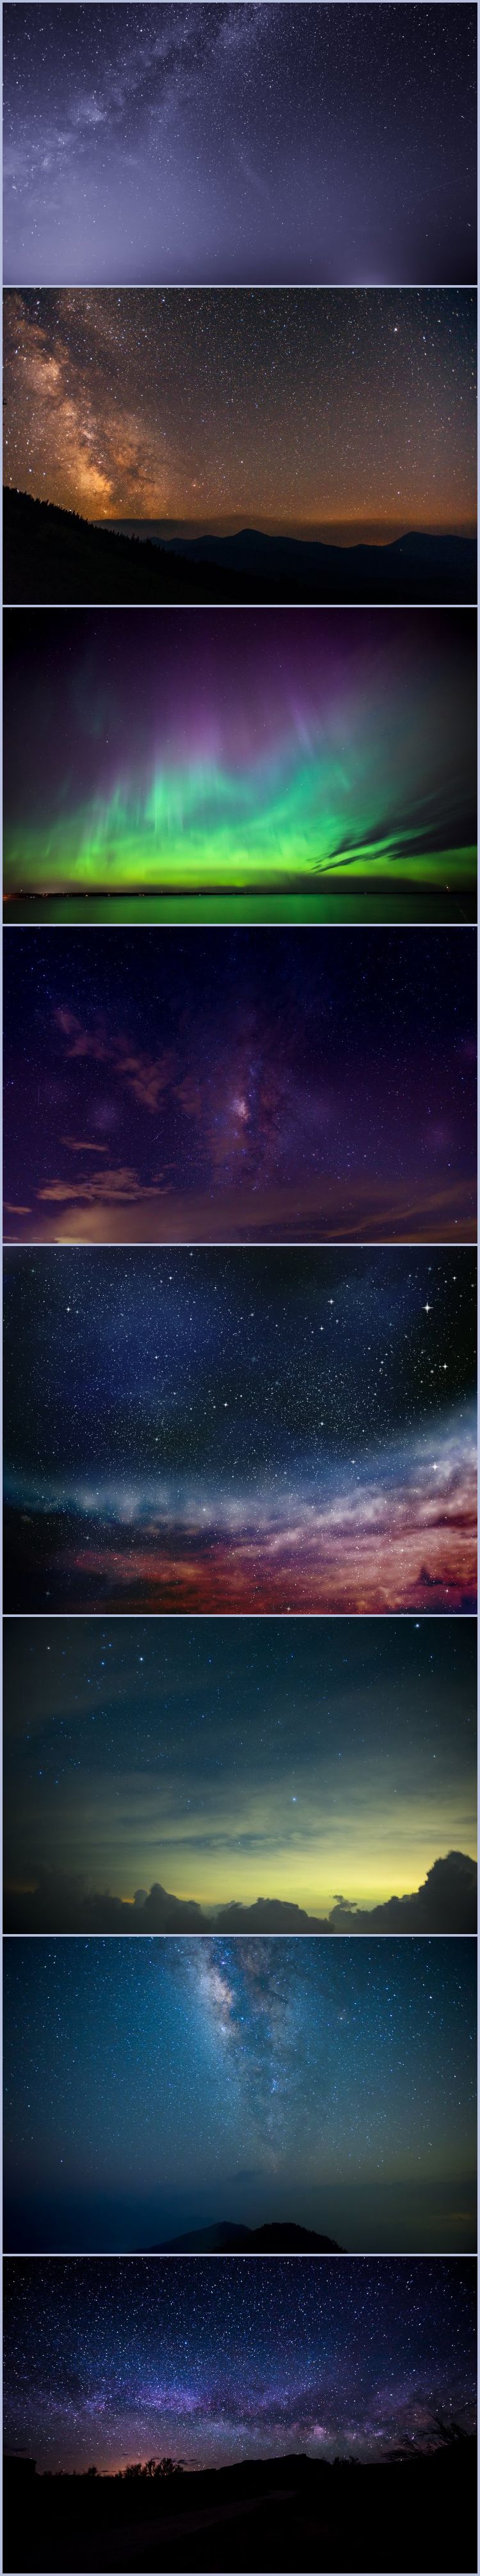 高清大图星空壁纸、 夜景天空、星星、北极光图片素材